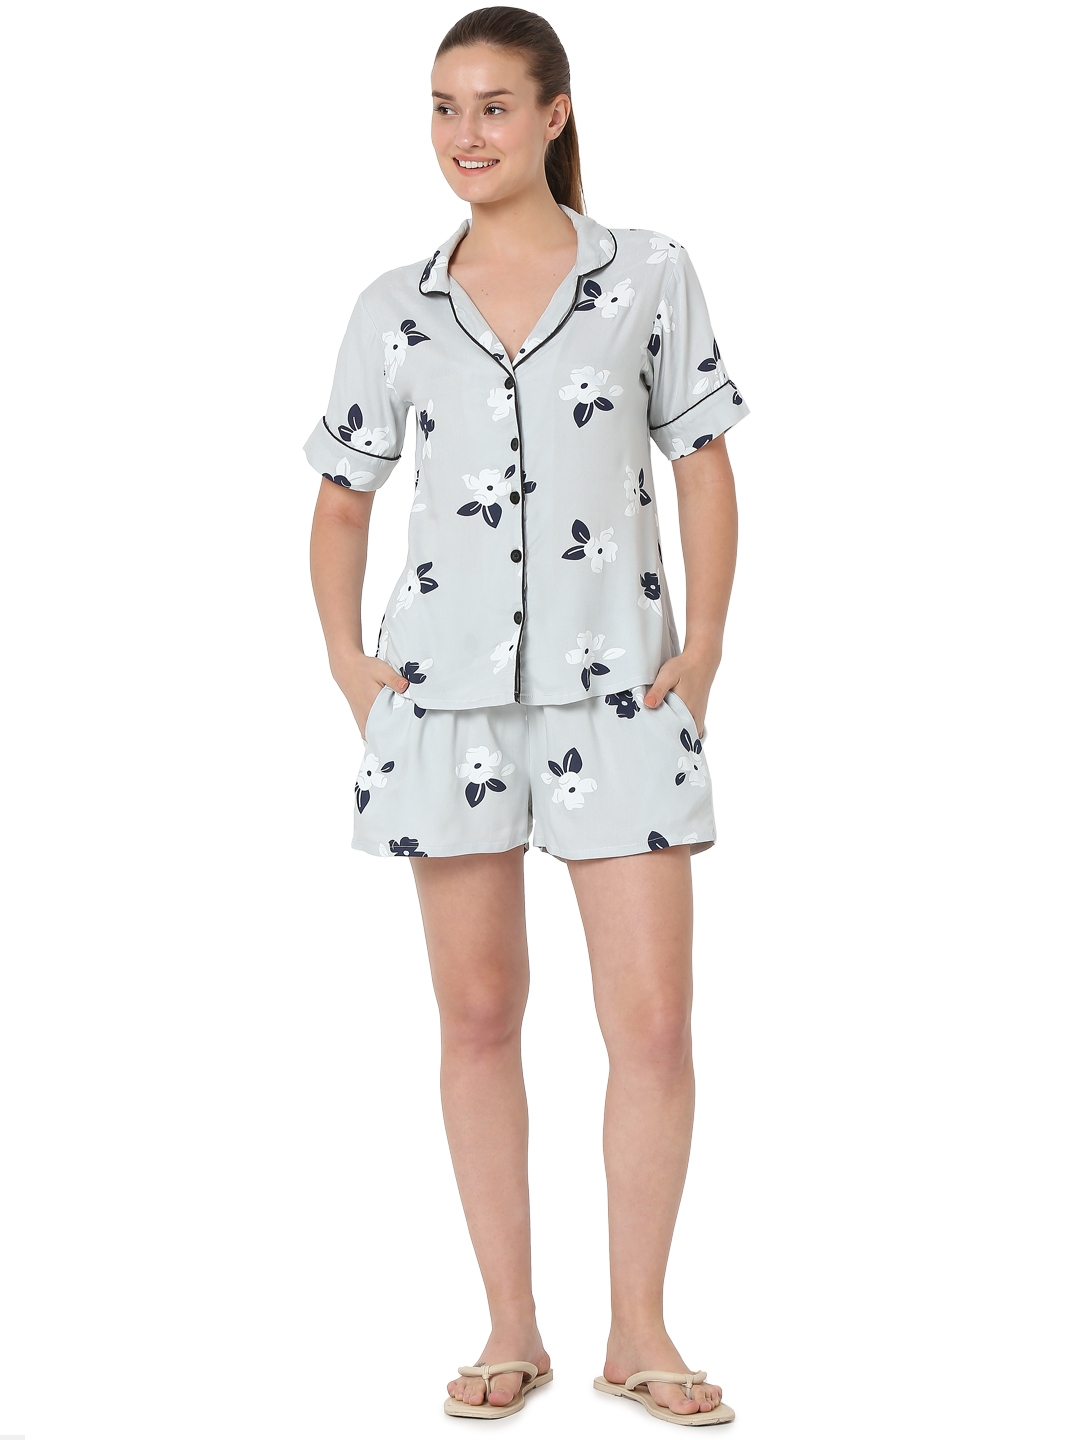 Smarty Pants | Smarty Pants women's cotton grey color floral print shorts & shirt night suit. 